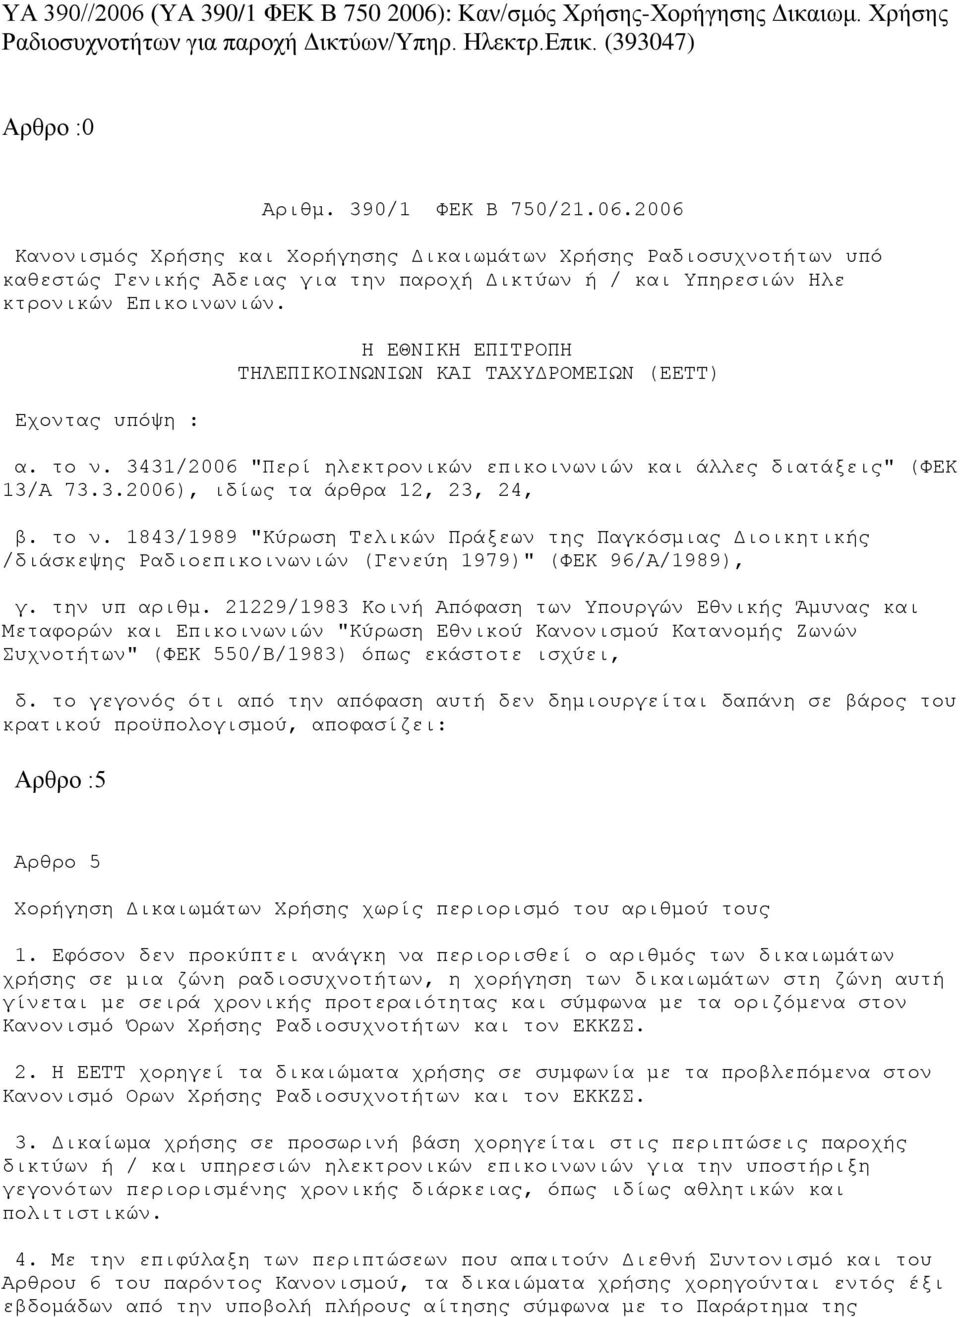 το ν. 1843/1989 "Κύρωση Τελικών Πράξεων της Παγκόσμιας Διοικητικής /διάσκεψης Ραδιοεπικοινωνιών (Γενεύη 1979)" (ΦΕΚ 96/Α/1989), γ. την υπ αριθμ.